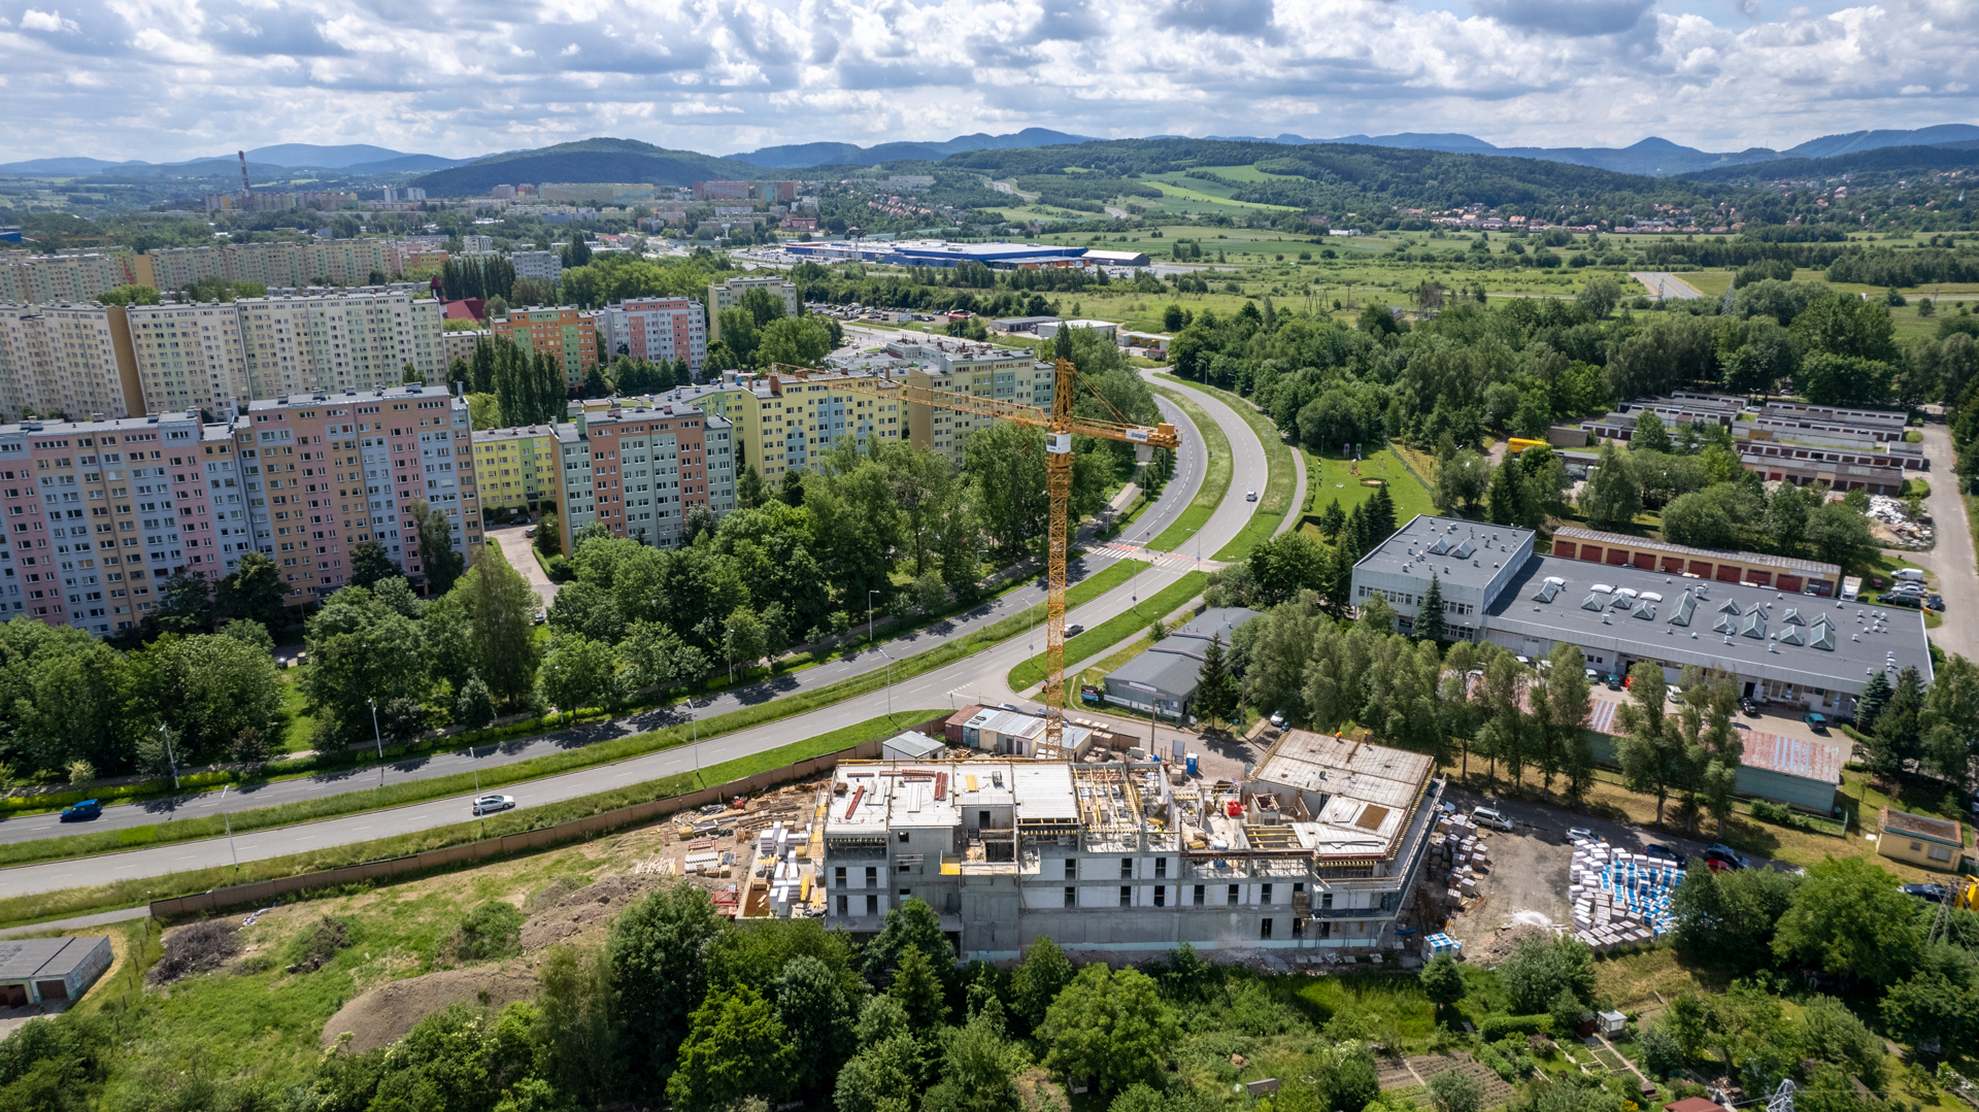 Nowe Podzamcze, Dziennik budowy - Nowe Podzamcze w Wałbrzychu z drona - maj 2022